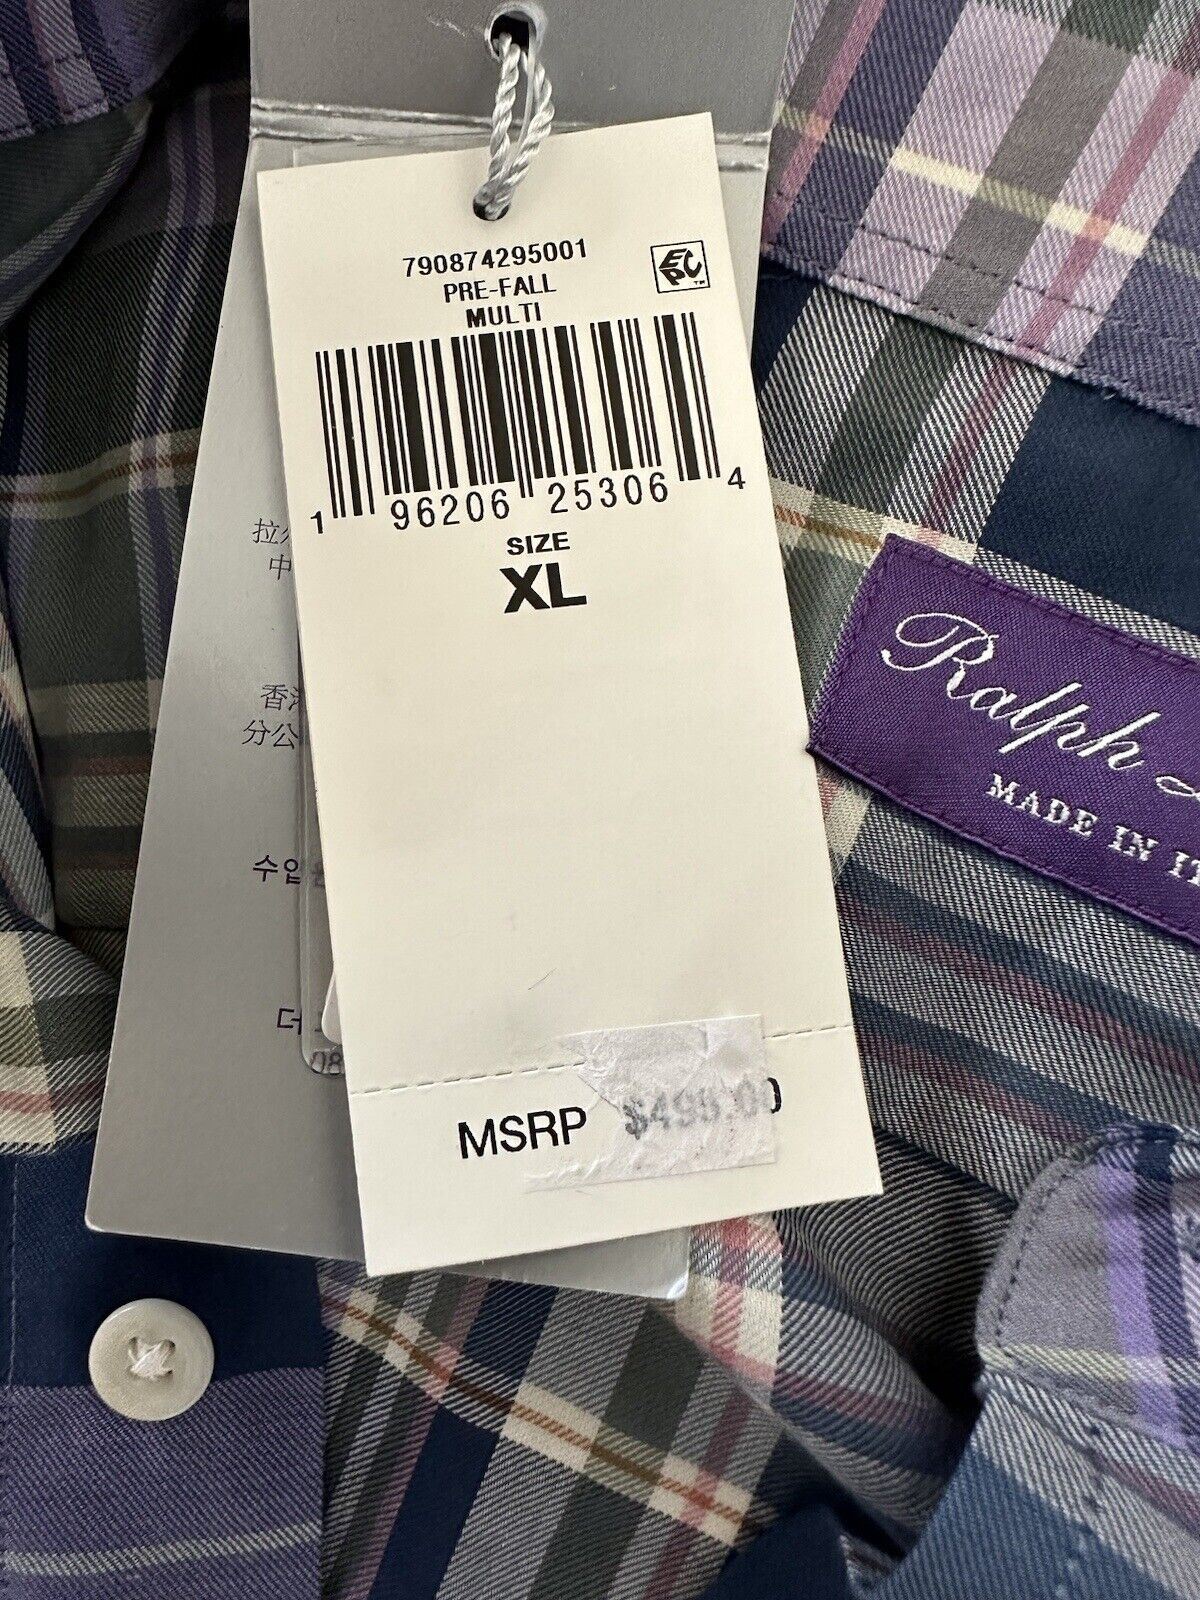 Neu mit Etikett: 495 $ Ralph Lauren Purple Label Baumwoll-Herrenhemd XL, hergestellt in Italien 